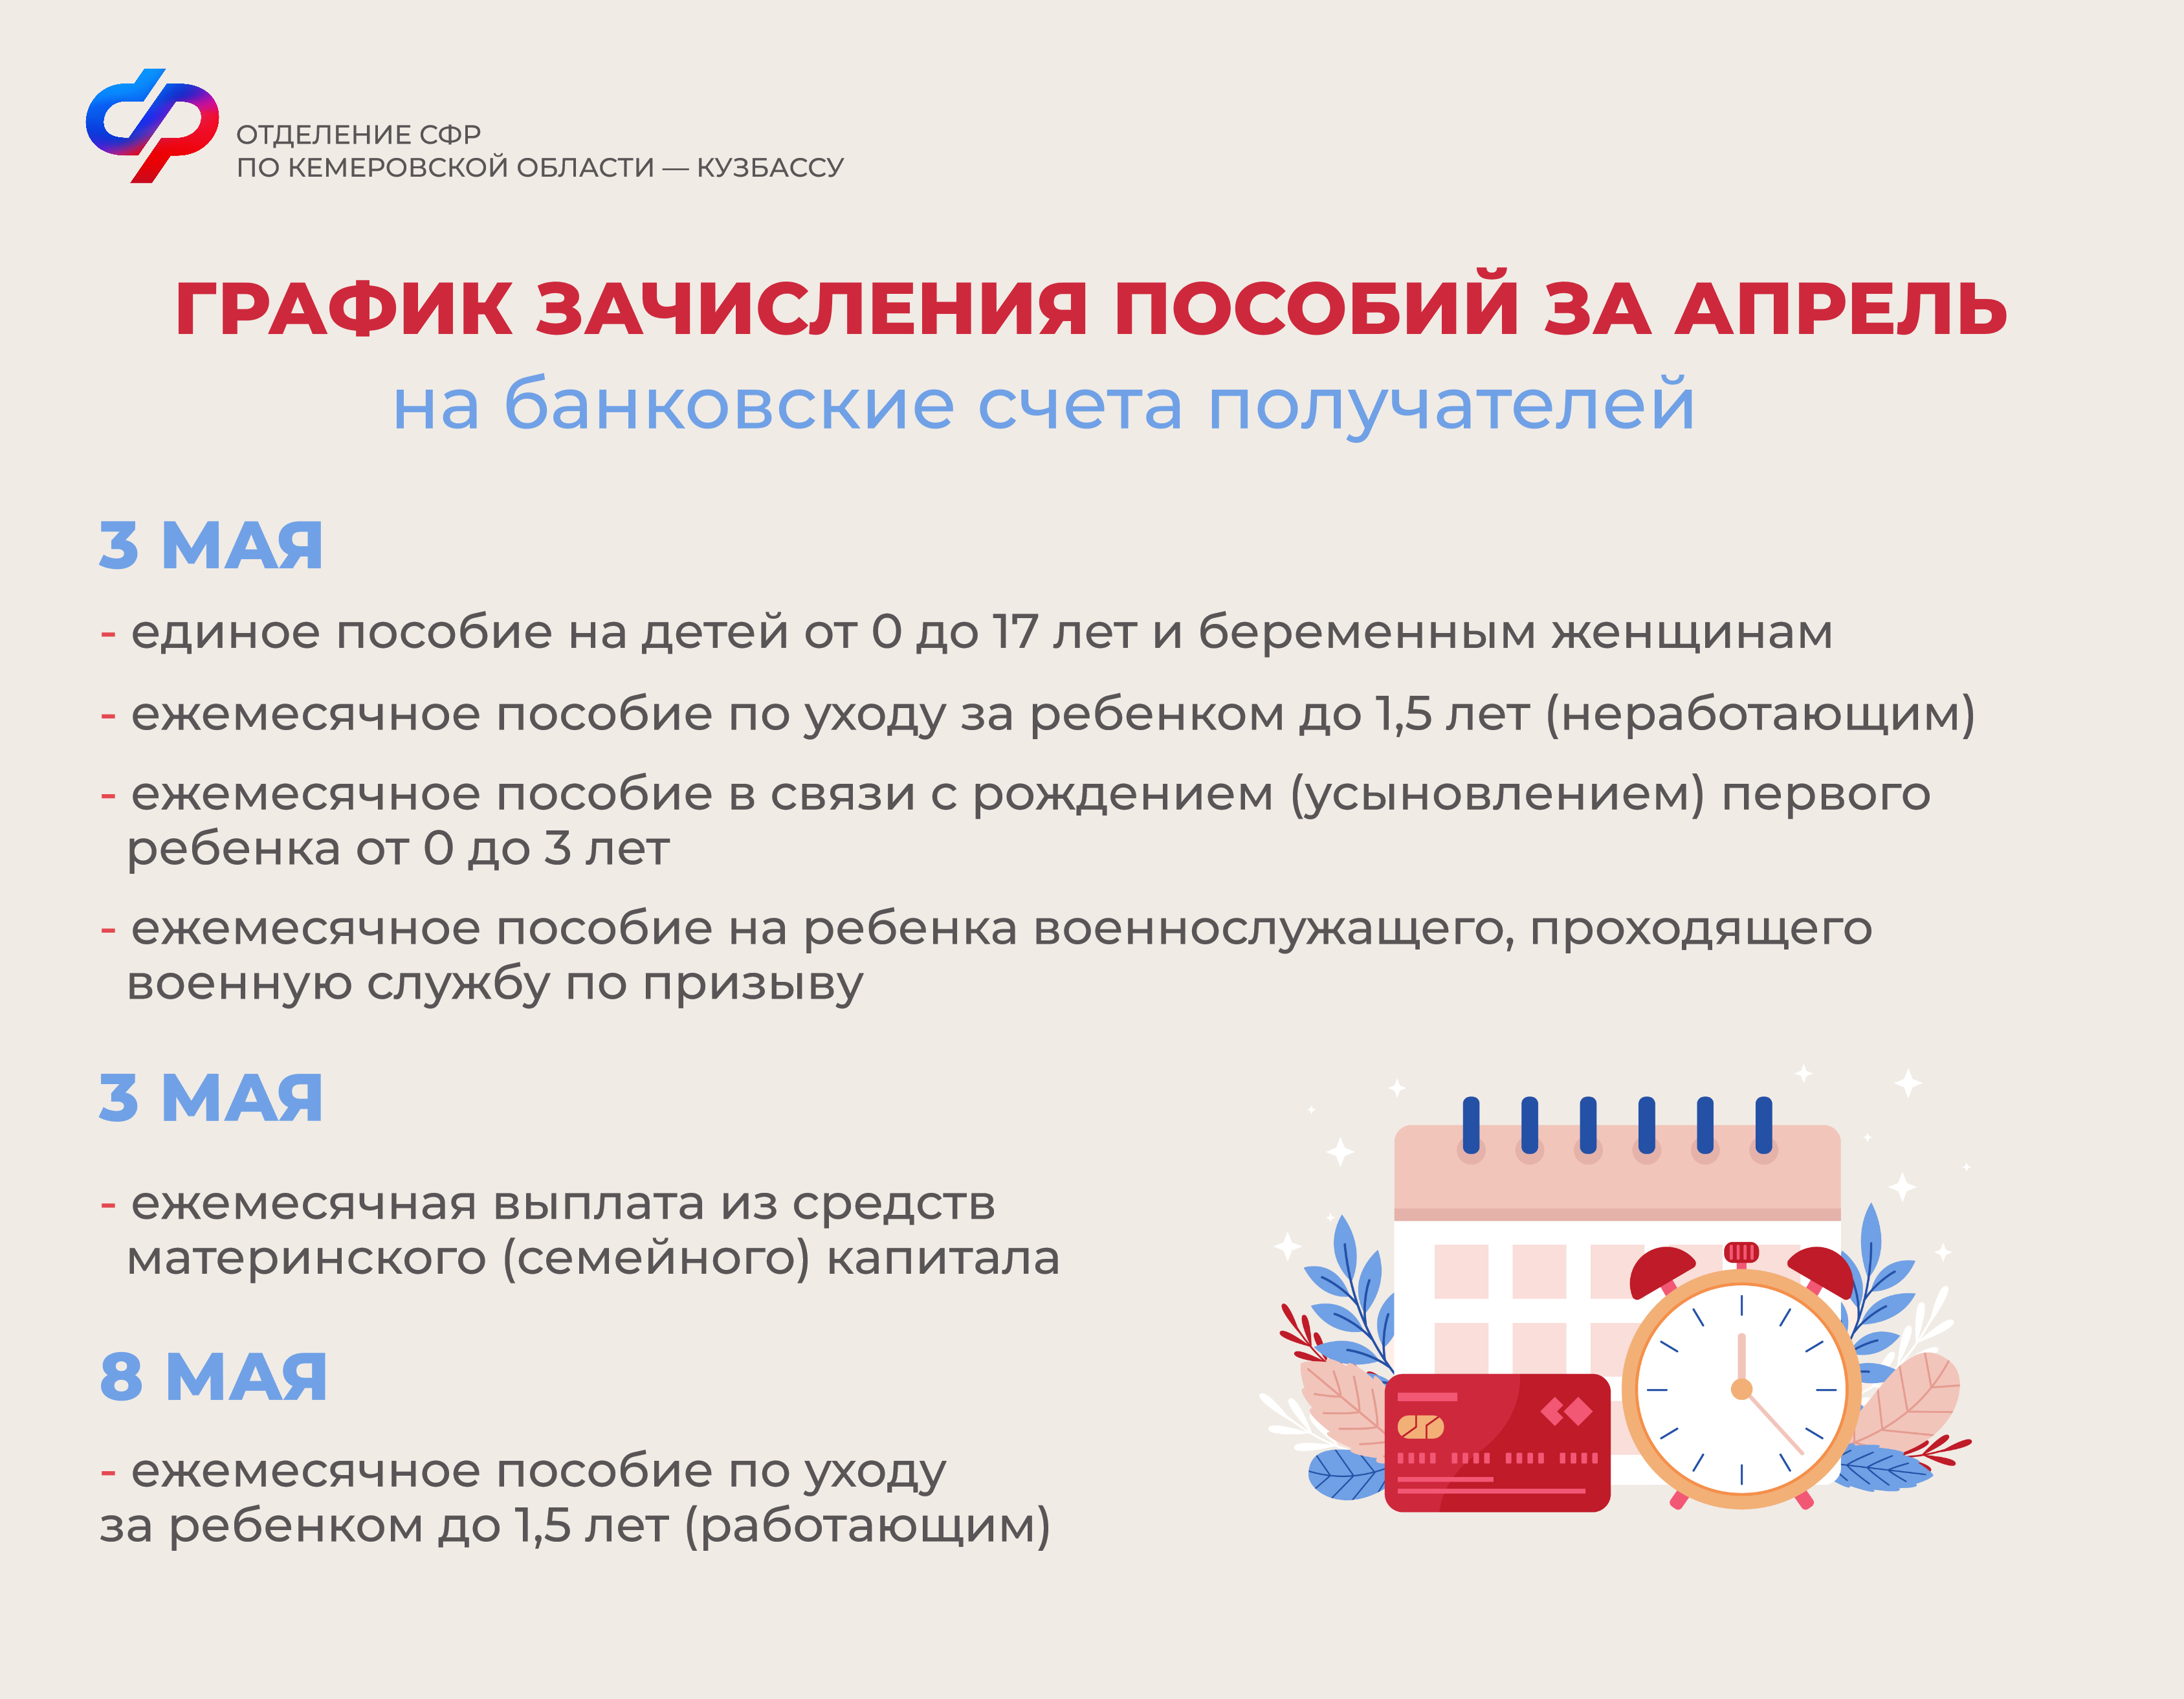 Выплата детских пособий за апрель и пенсий за май в Кемеровской области – Кузбассе пройдет в стандартные сроки. 